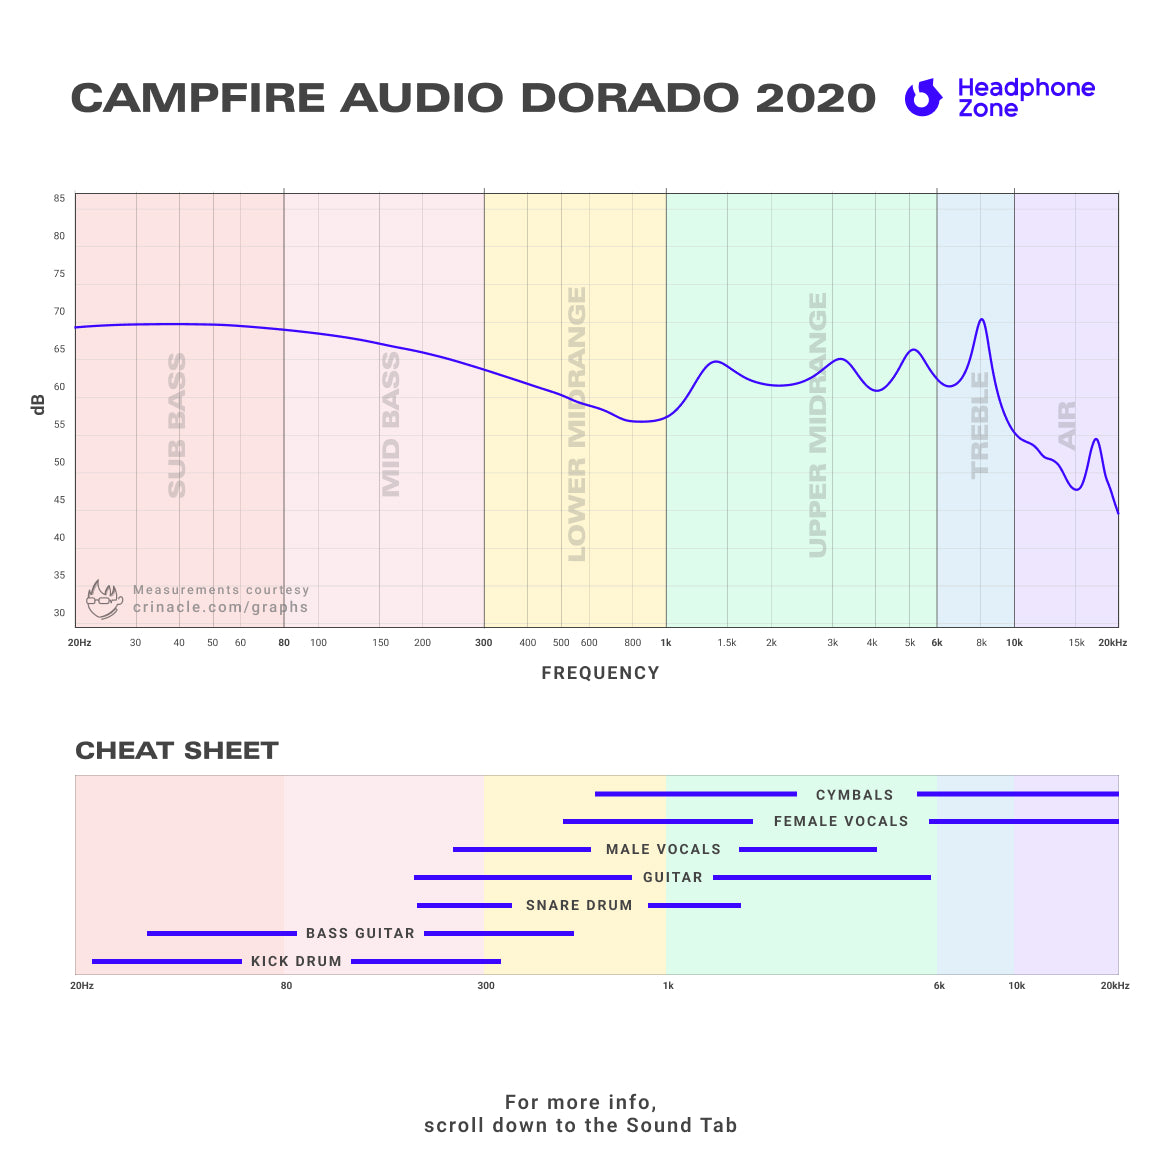 Headphone-Zone-Campfire Audio-Dorado 2020